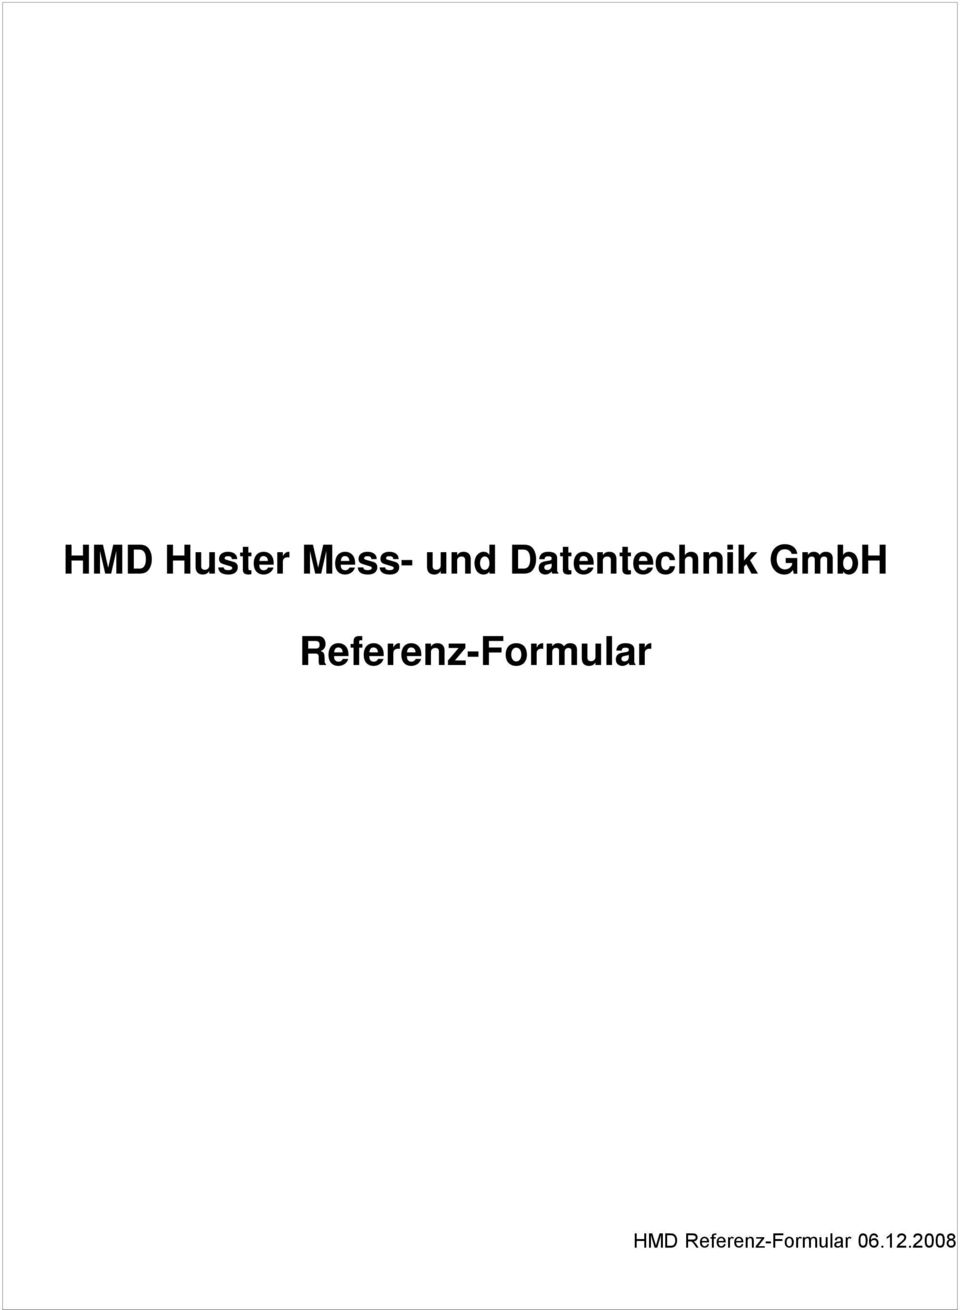 Referenz-Formular HMD